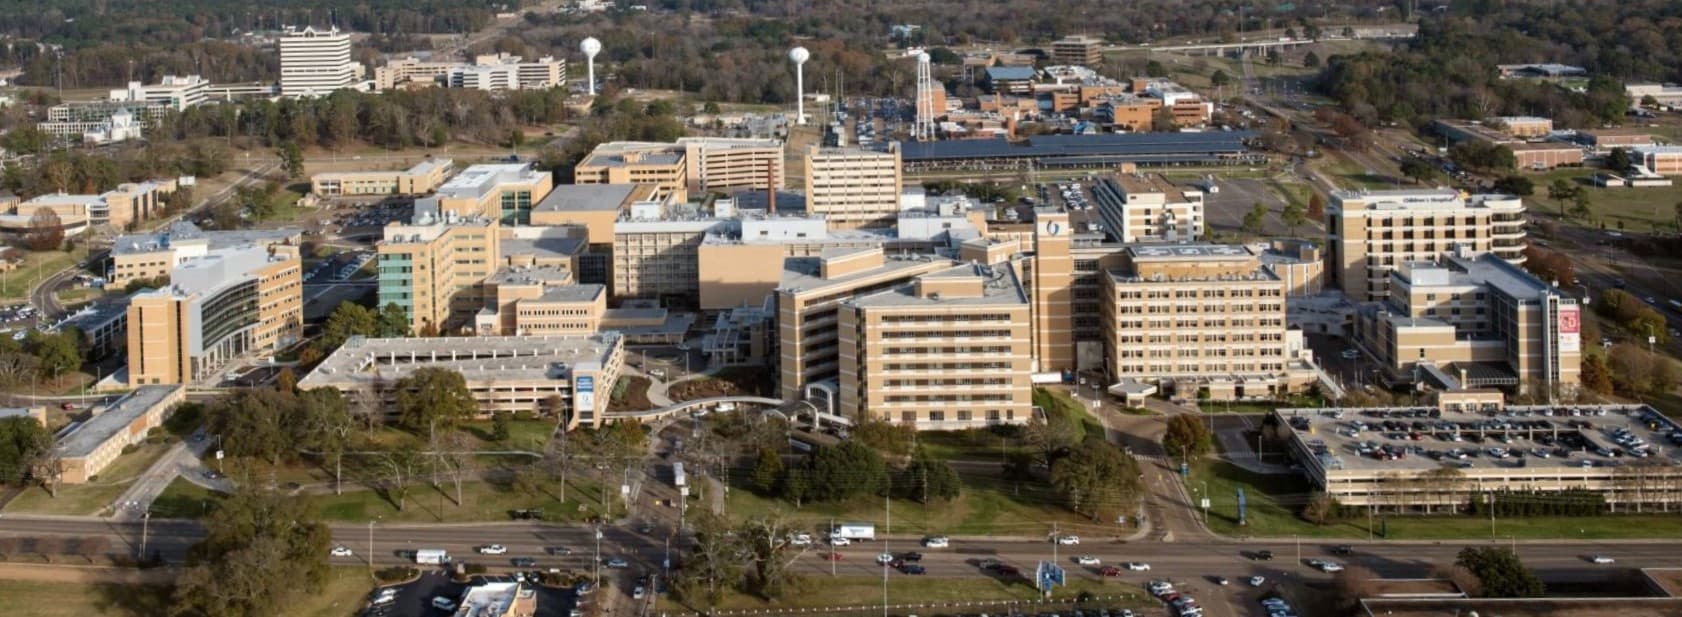 Aerial view of UMMC campus